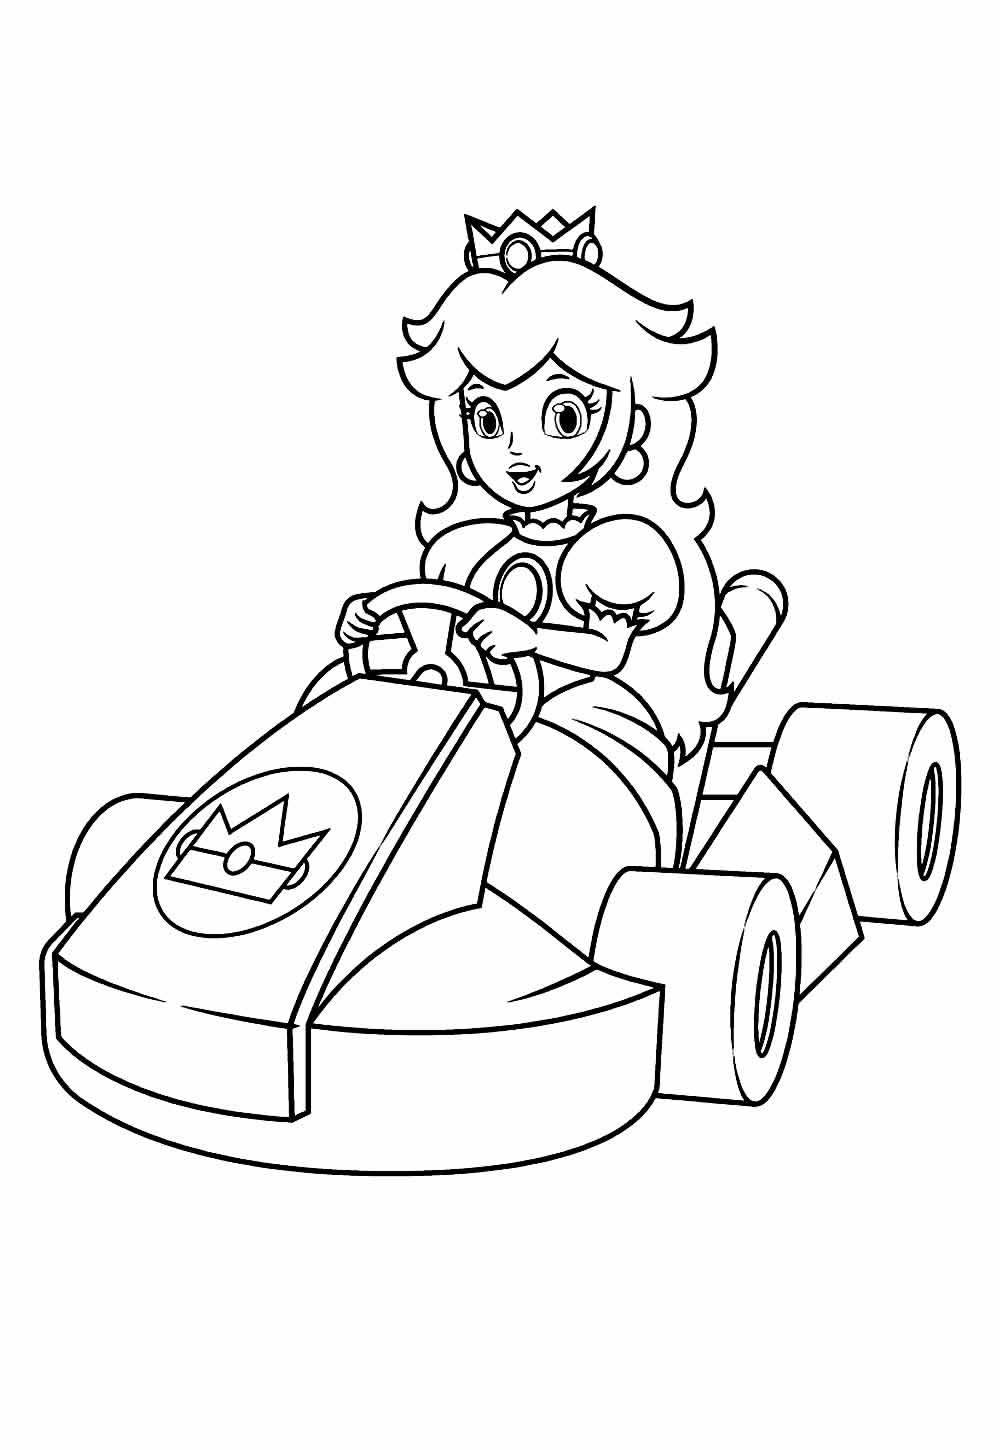 Desenho para pintar de Mario Kart